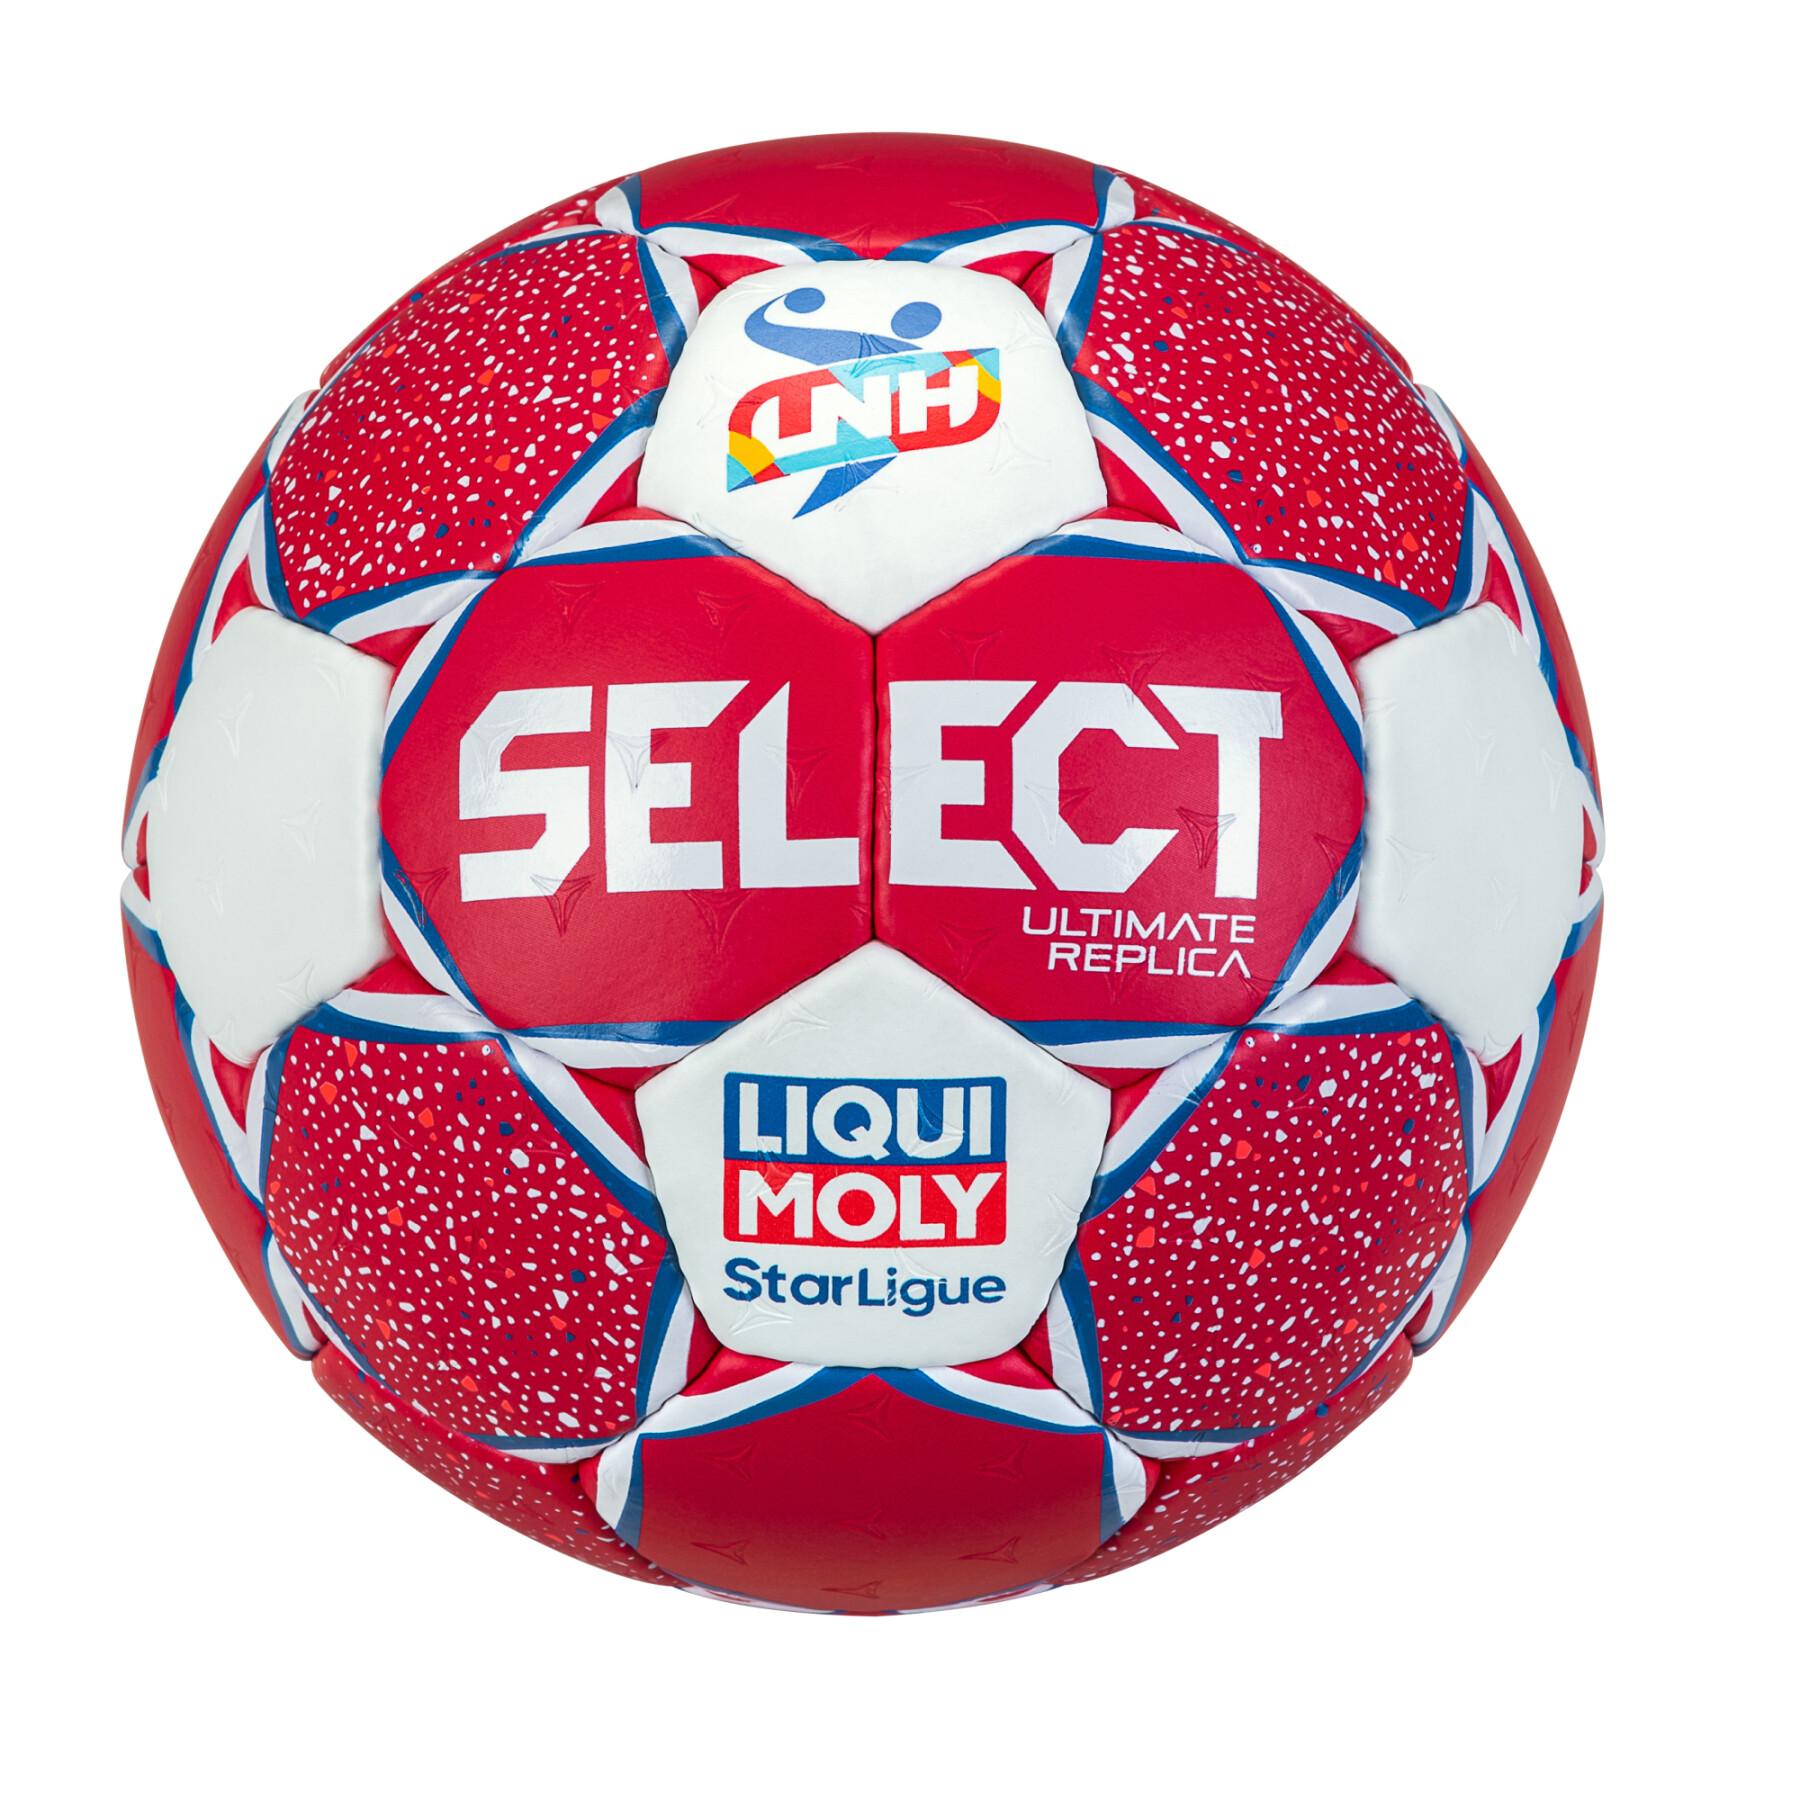 Balón de Balonmano Select Ultimate Replica LNH